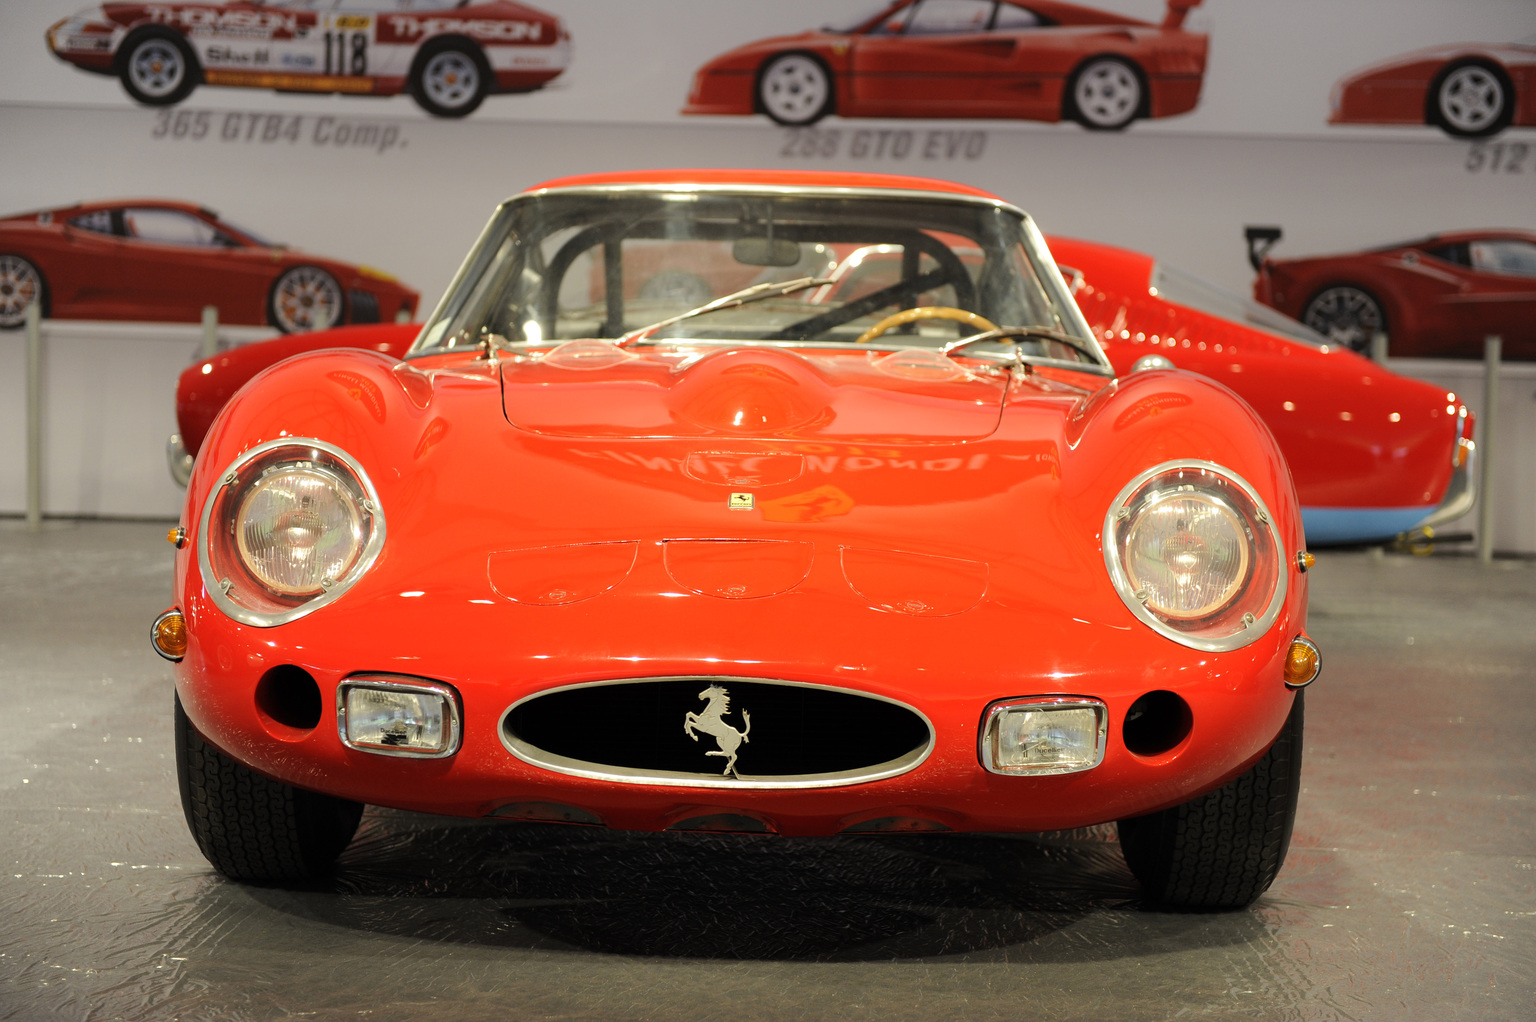 Ferrari 1962. Ferrari 250 GTO. Ferrari 250 GTO 1962. Ferrari 250 GTO '62. Ferrari 250 GTO 1962 года.